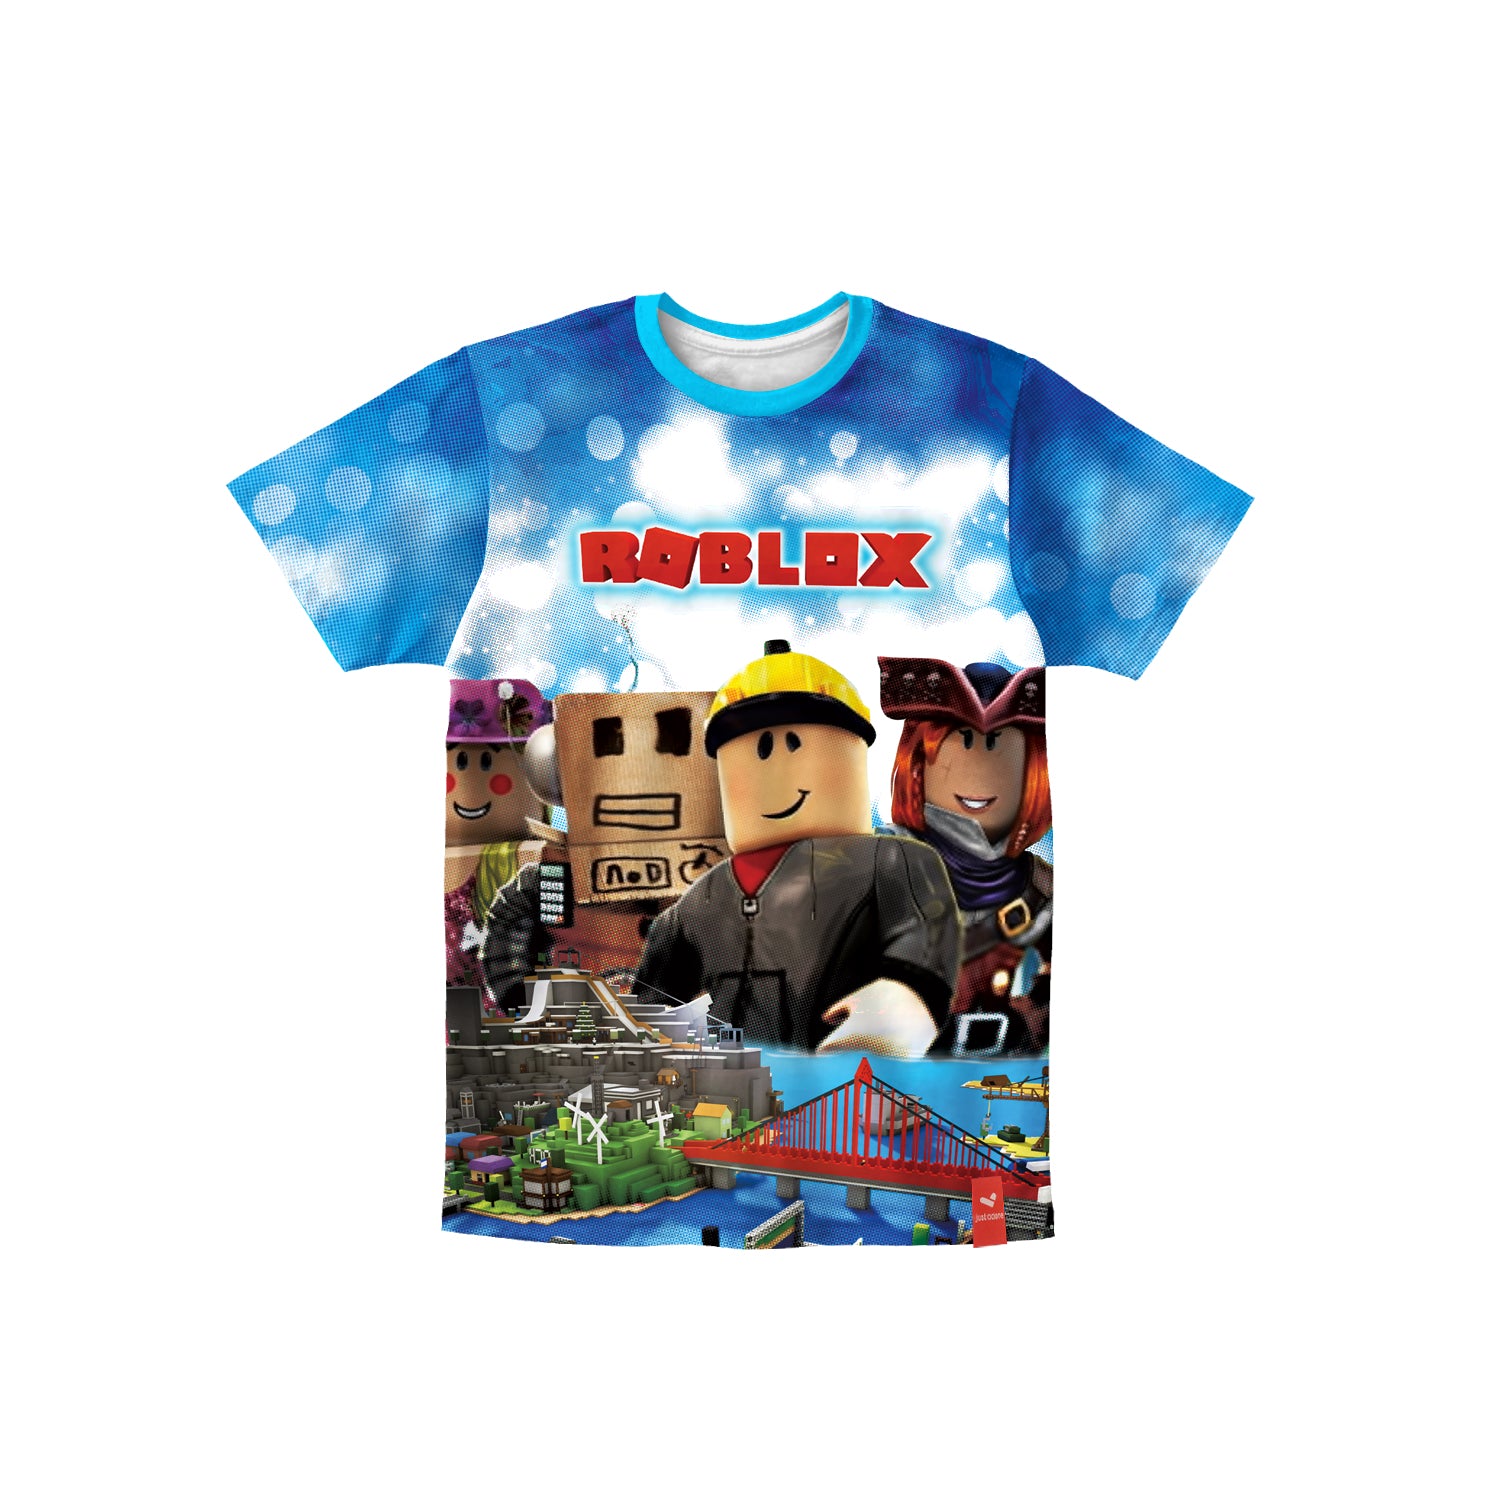 Roblox Gaming Printed Tshirt for Kids